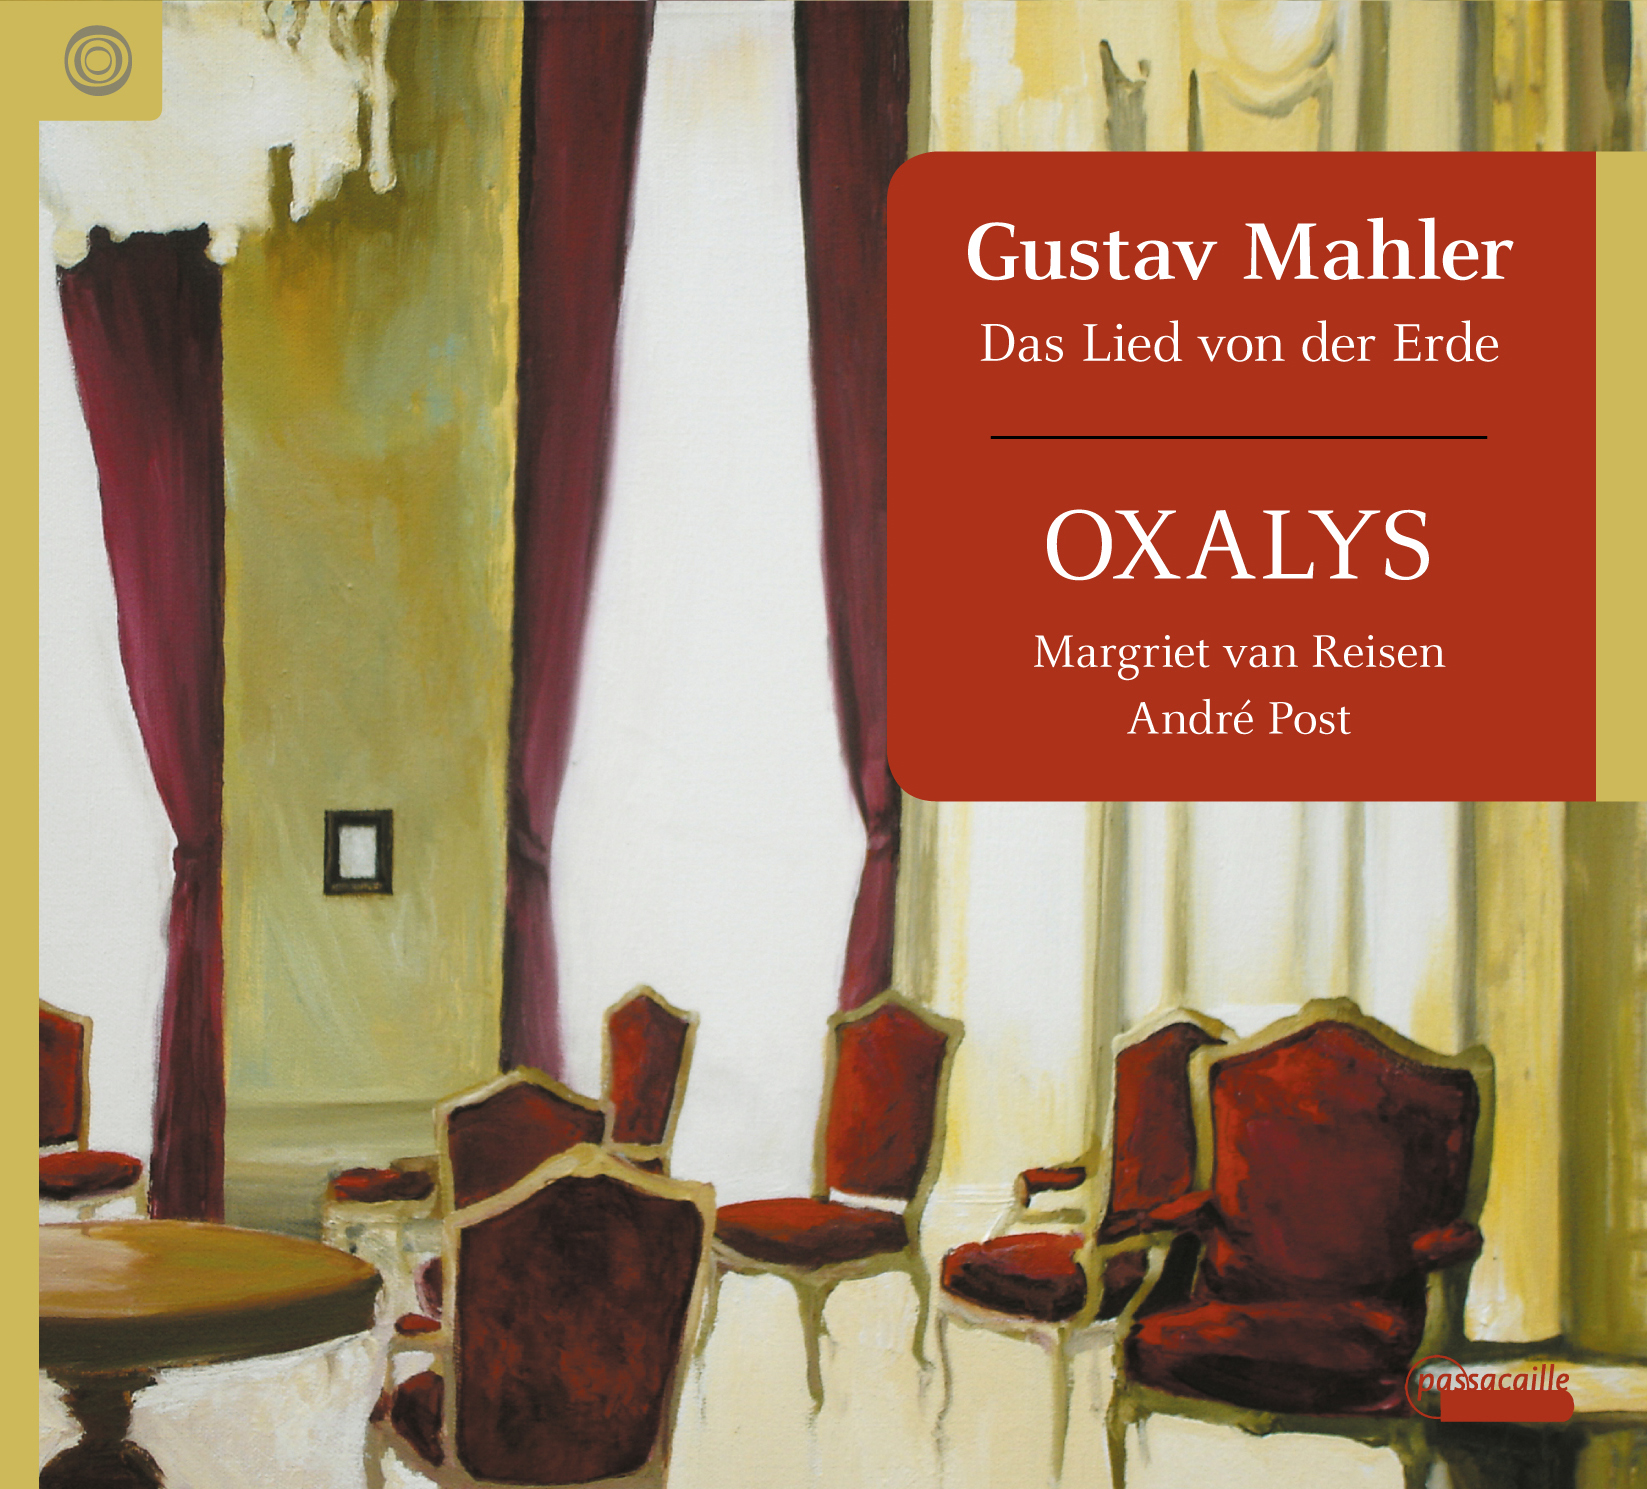 Das Lied von der Erde - Gustav Mahler - Oxalys